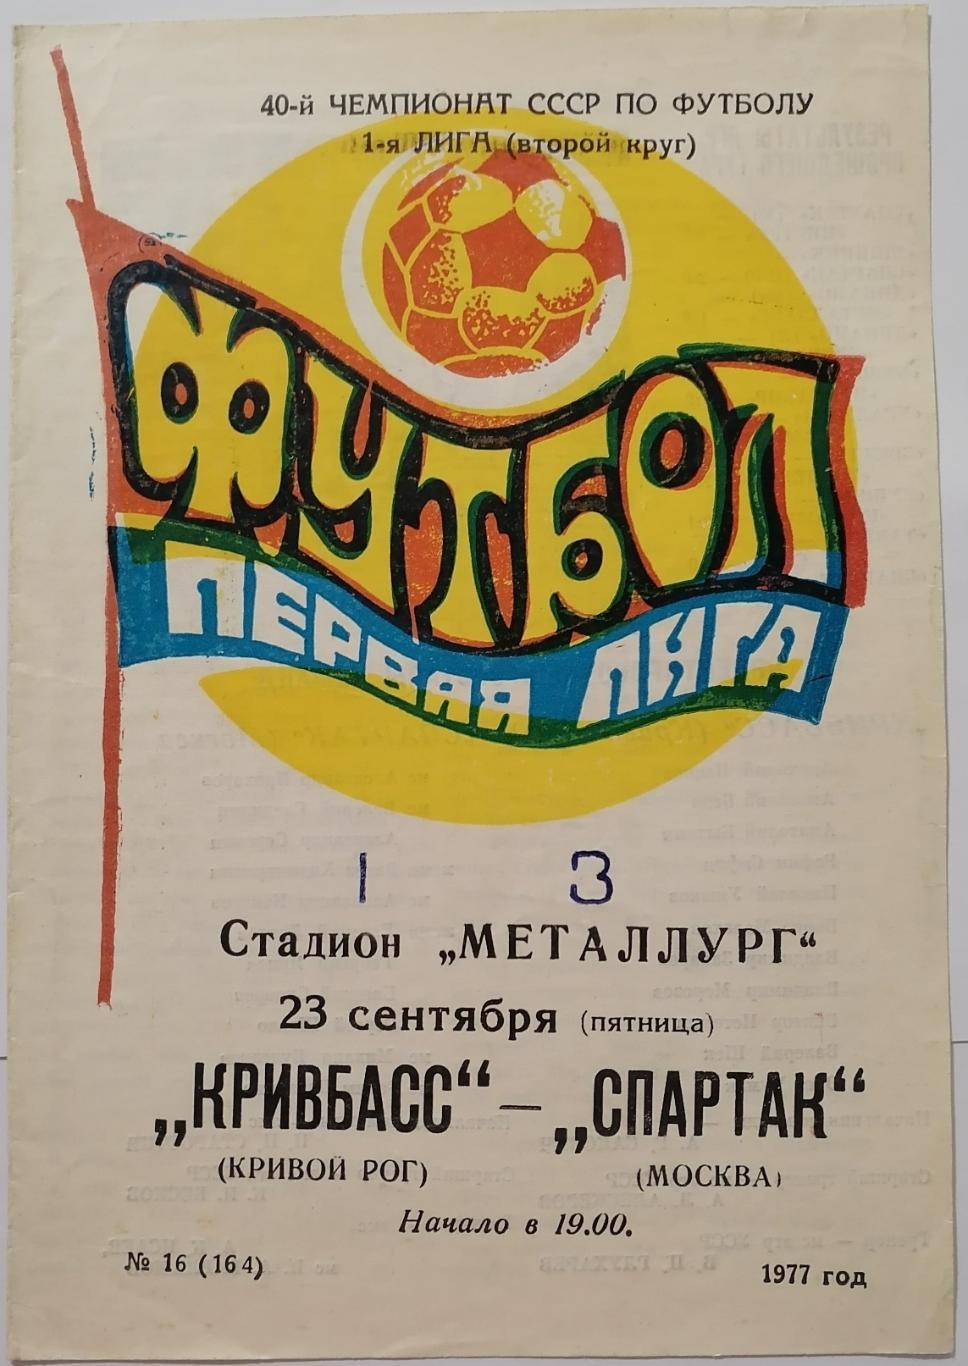 КРИВБАСС КРИВОЙ РОГ - СПАРТАК МОСКВА - 1977 официальная программа